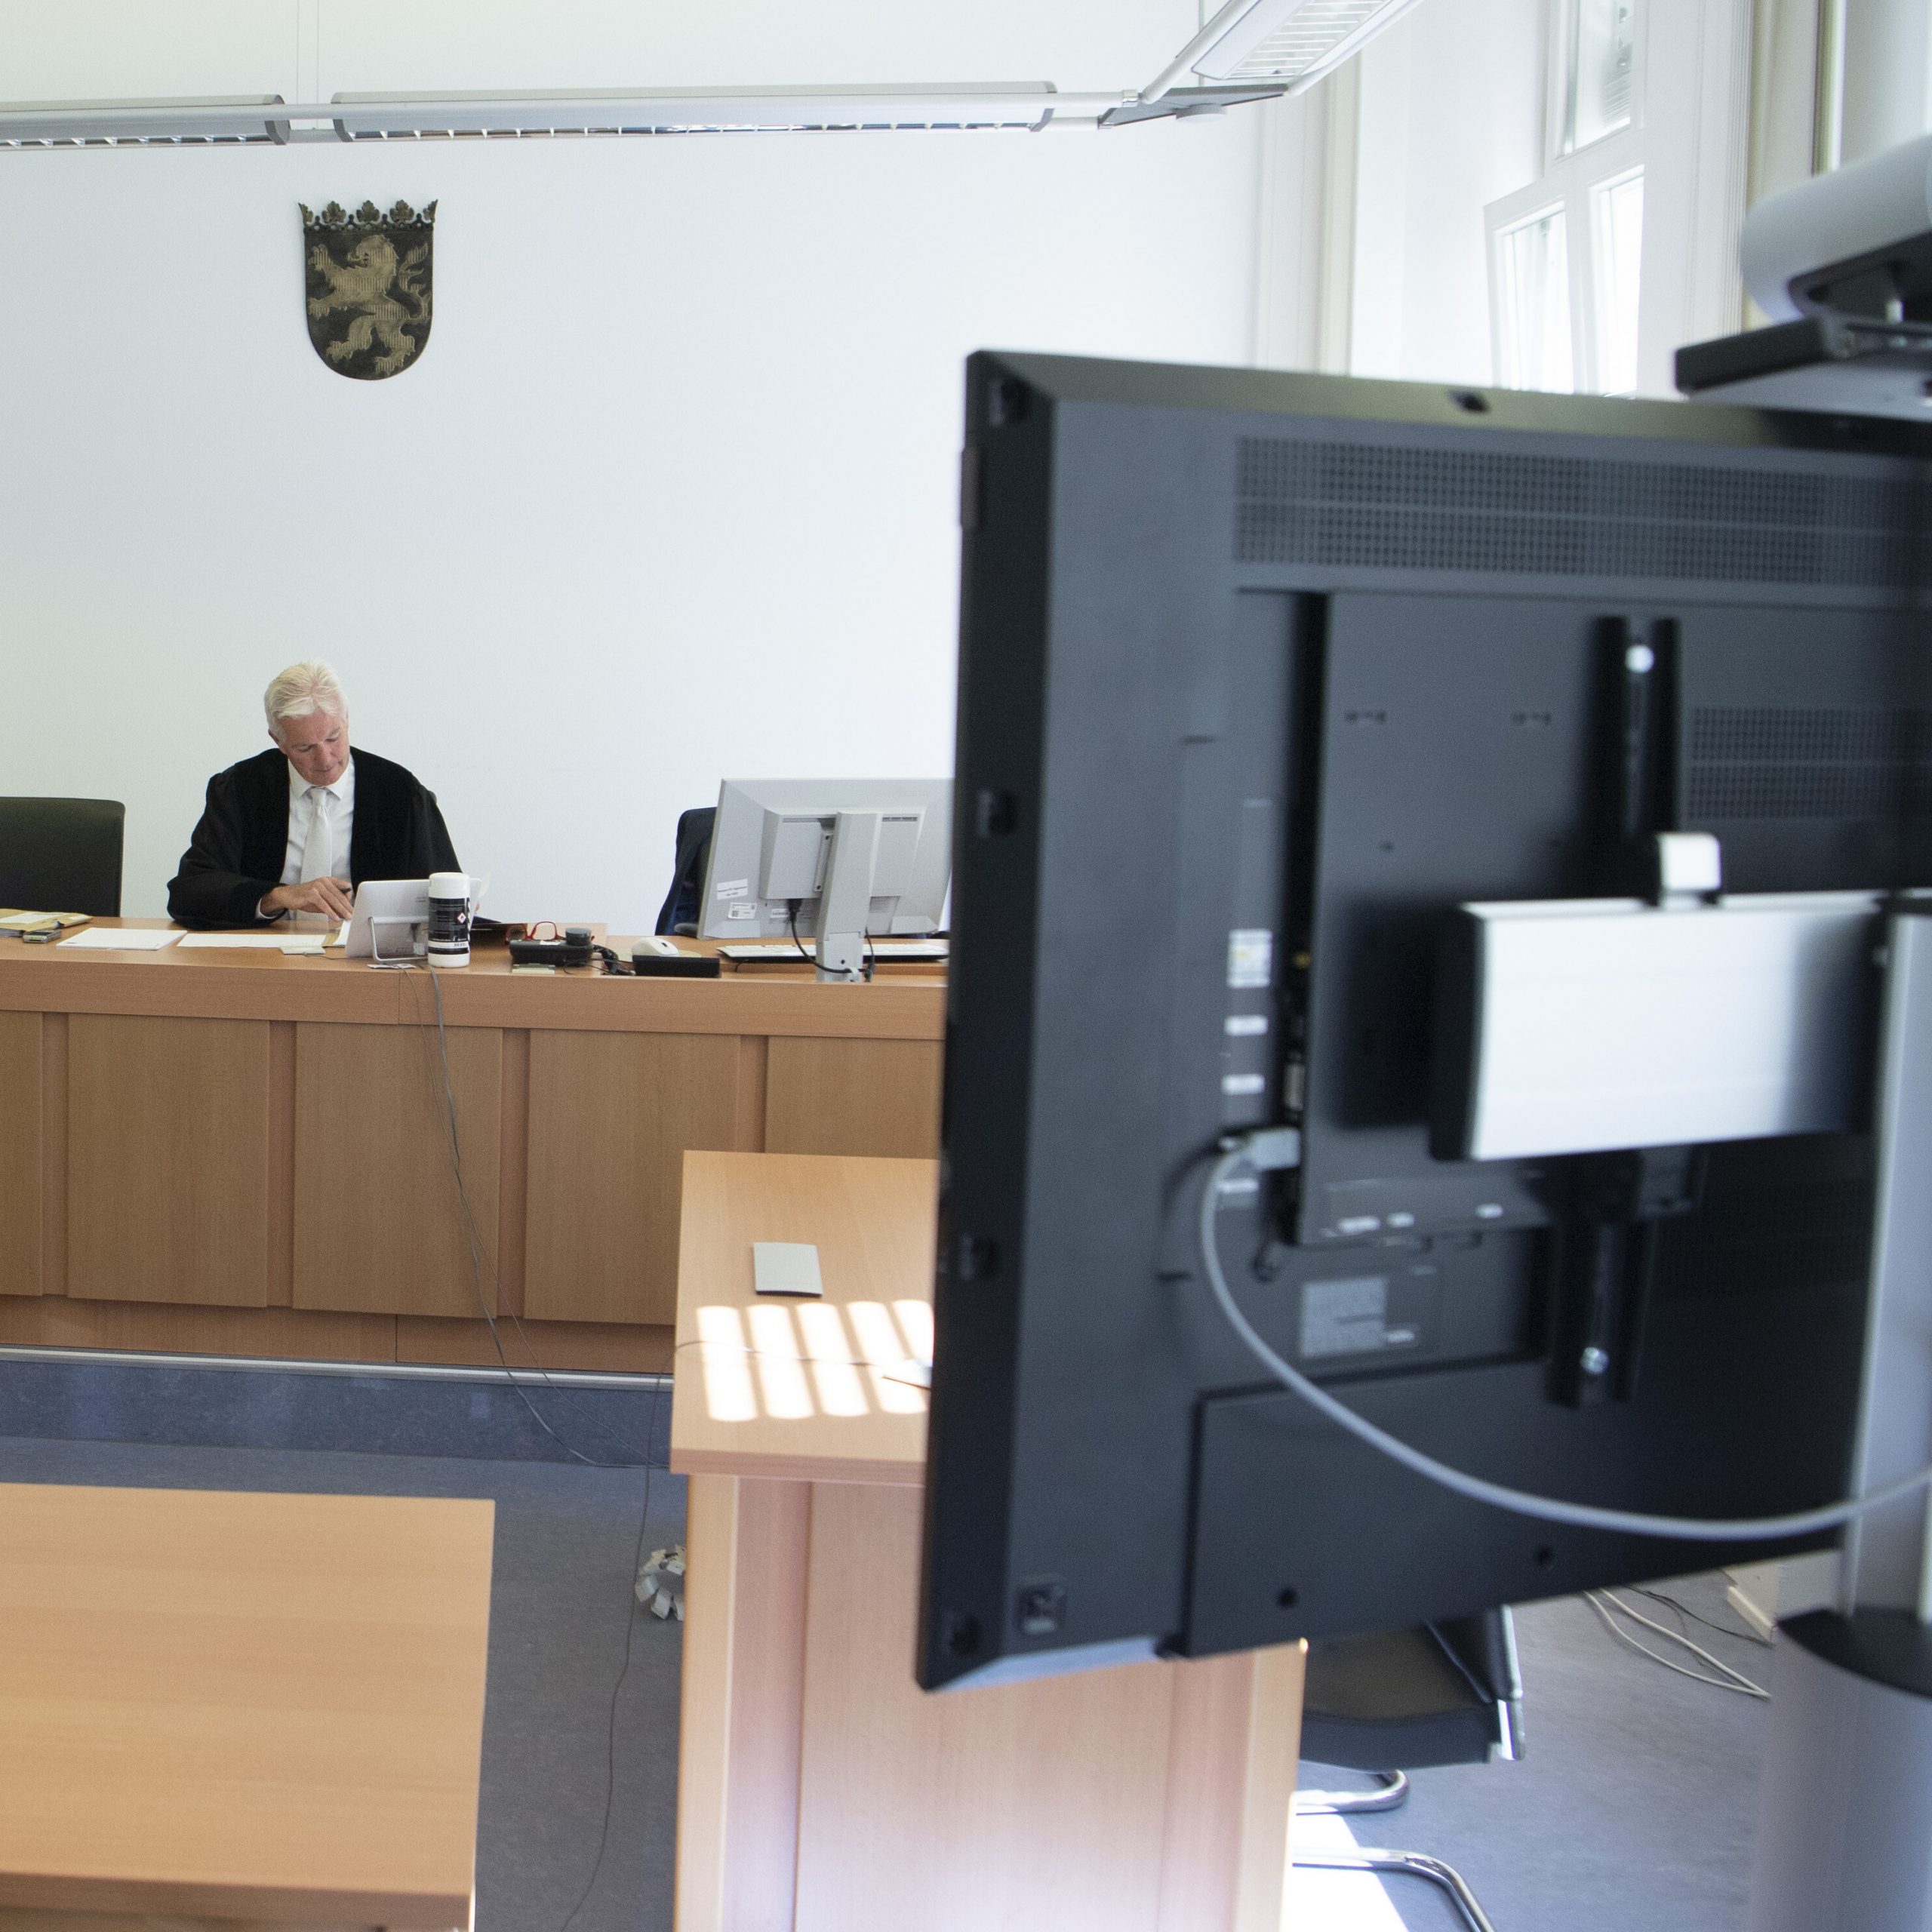 Im Gerichtssaal. Links der Richtertisch, an dem ein Richter sitzt. Rechts im Vordergrund der Bildschirm eines Videokonferenzsystems von hinten. Die Kamera auf dem Bildschirm ist auf de Richter gerichtet.